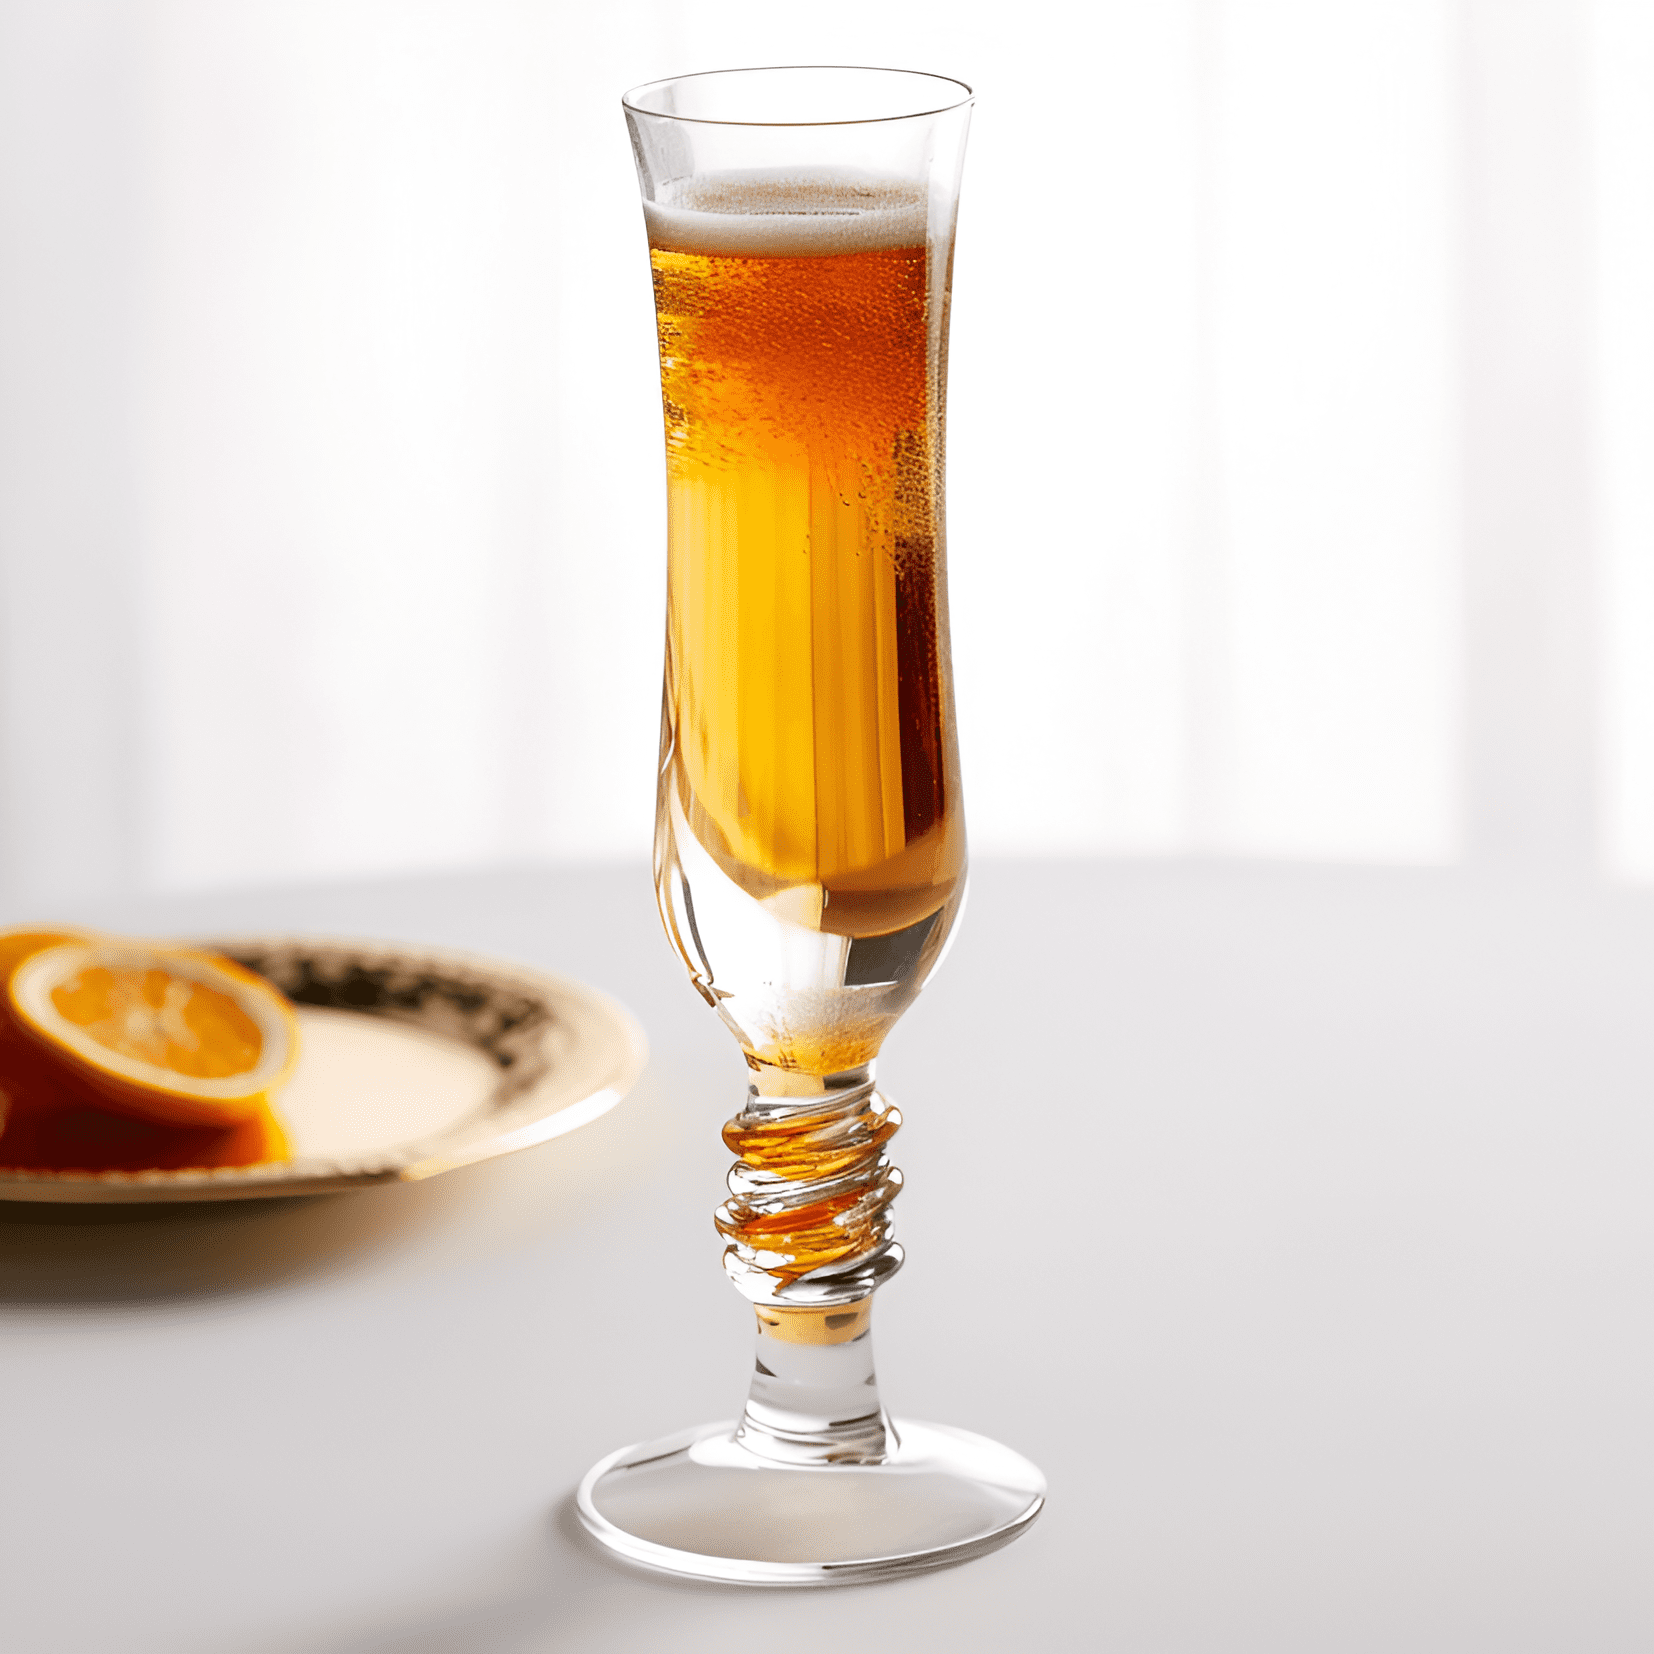 Seelbach Cóctel Receta - El cóctel Seelbach es una bebida compleja y bien equilibrada con una combinación de sabores dulces, amargos y cítricos. Tiene un sabor fuerte y alcohólico, con un toque de efervescencia del champán.